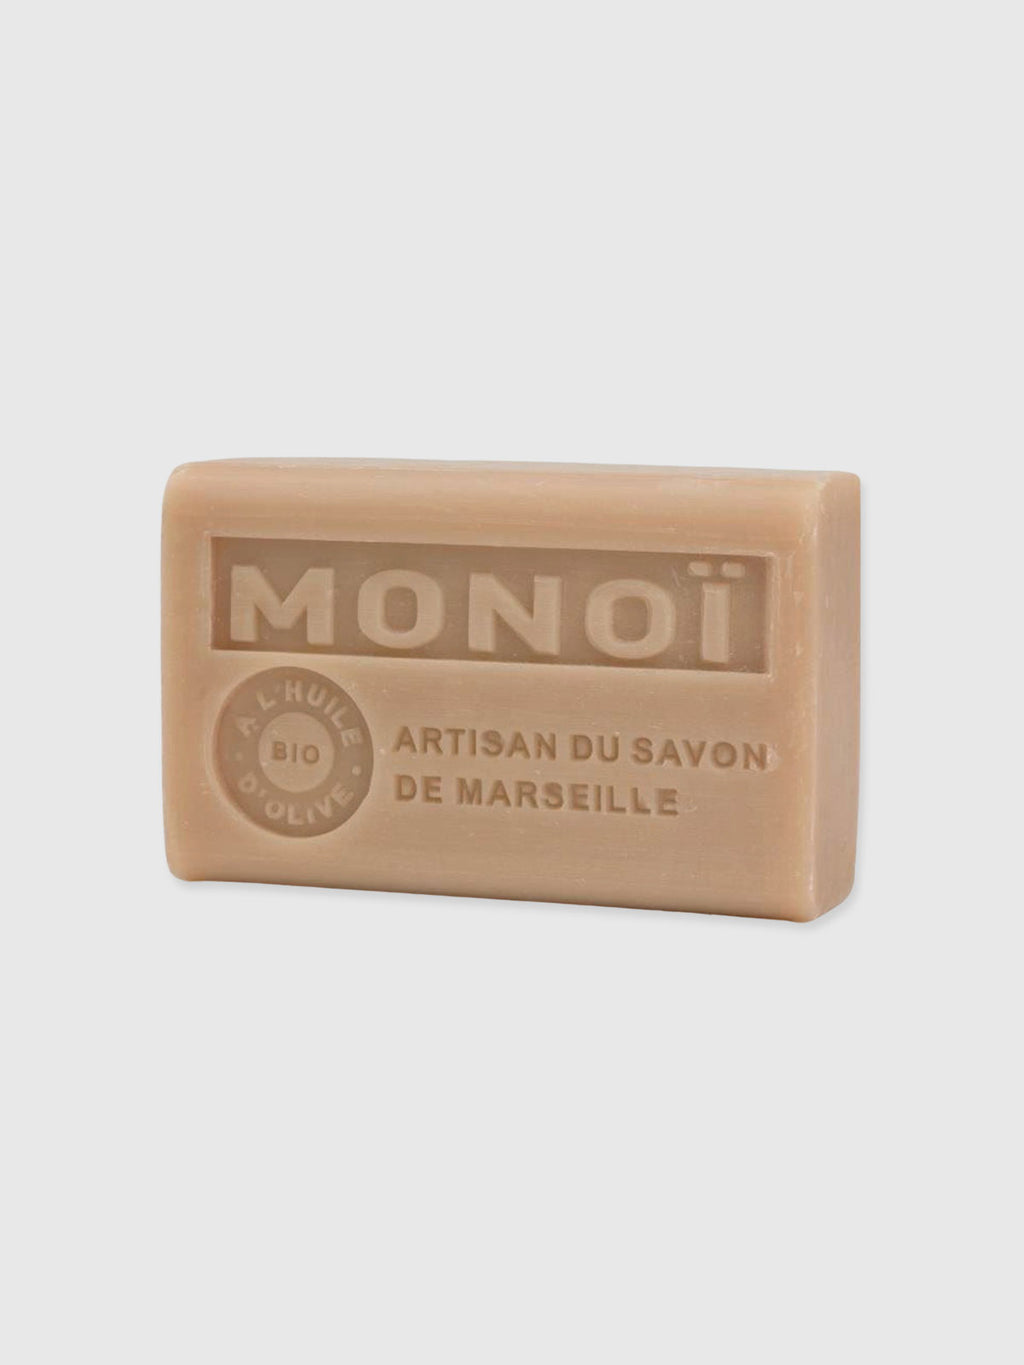 Savon de Marseille French Soap Monoi